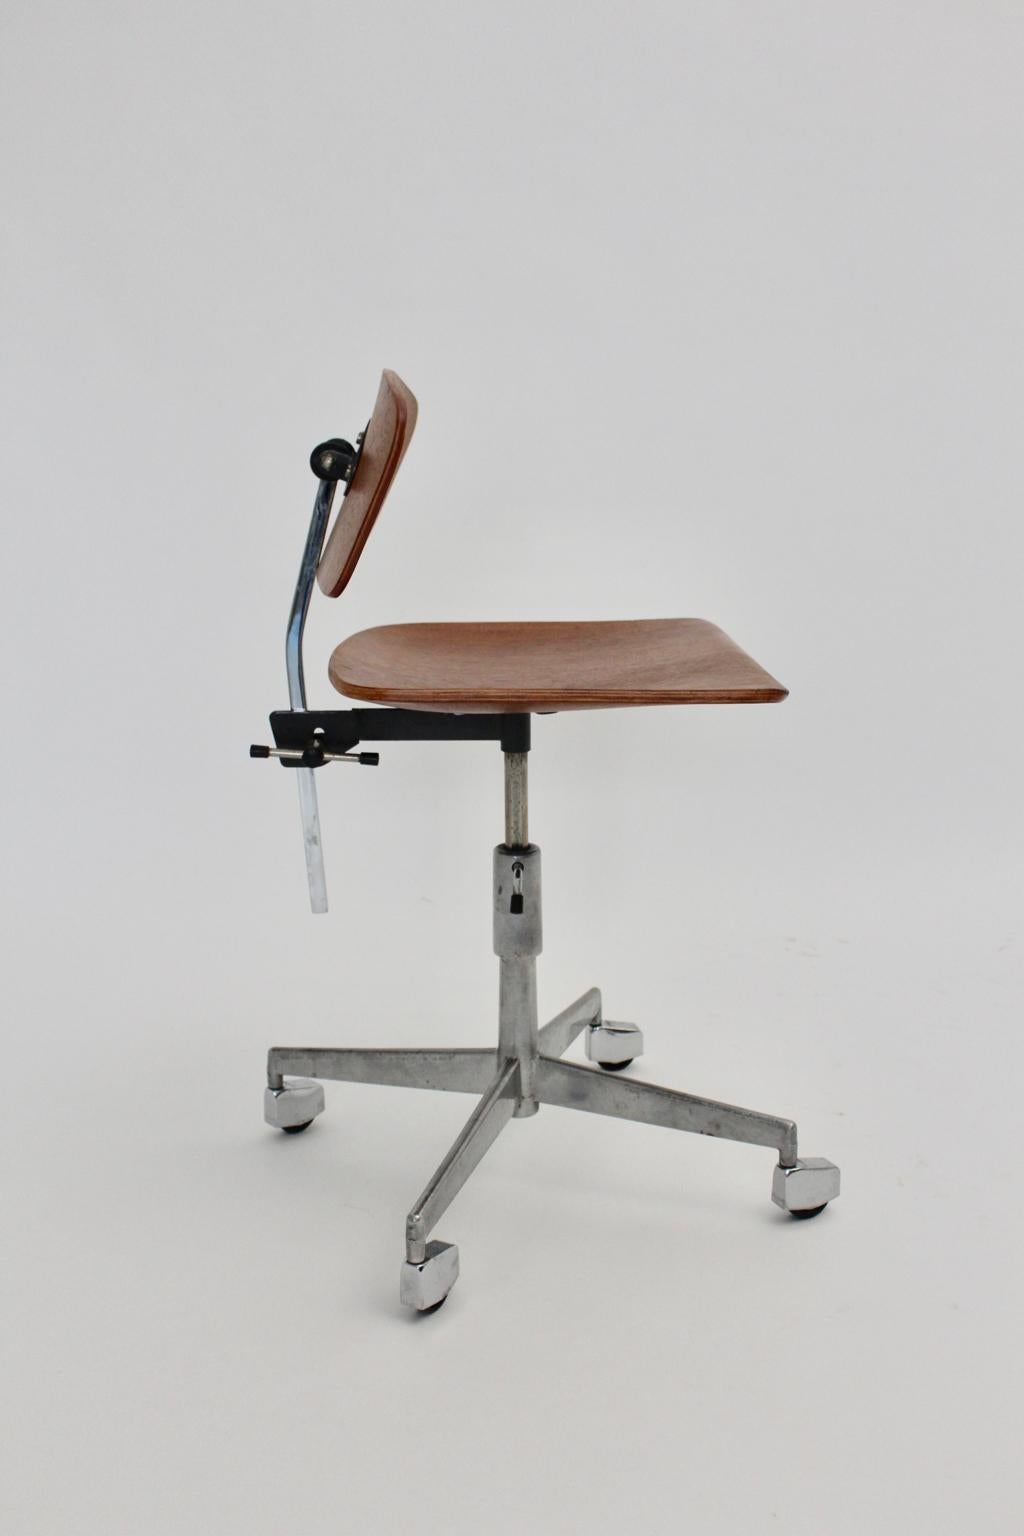 Chaise de bureau vintage Mid-Century Modern conçue par Jorgen Rasmussen dans les années 1950 au Danemark et exécutée par Labofa.
Le cadre en métal chromé présente quatre roues. L'assise et le dossier ont été réalisés en contreplaqué de hêtre